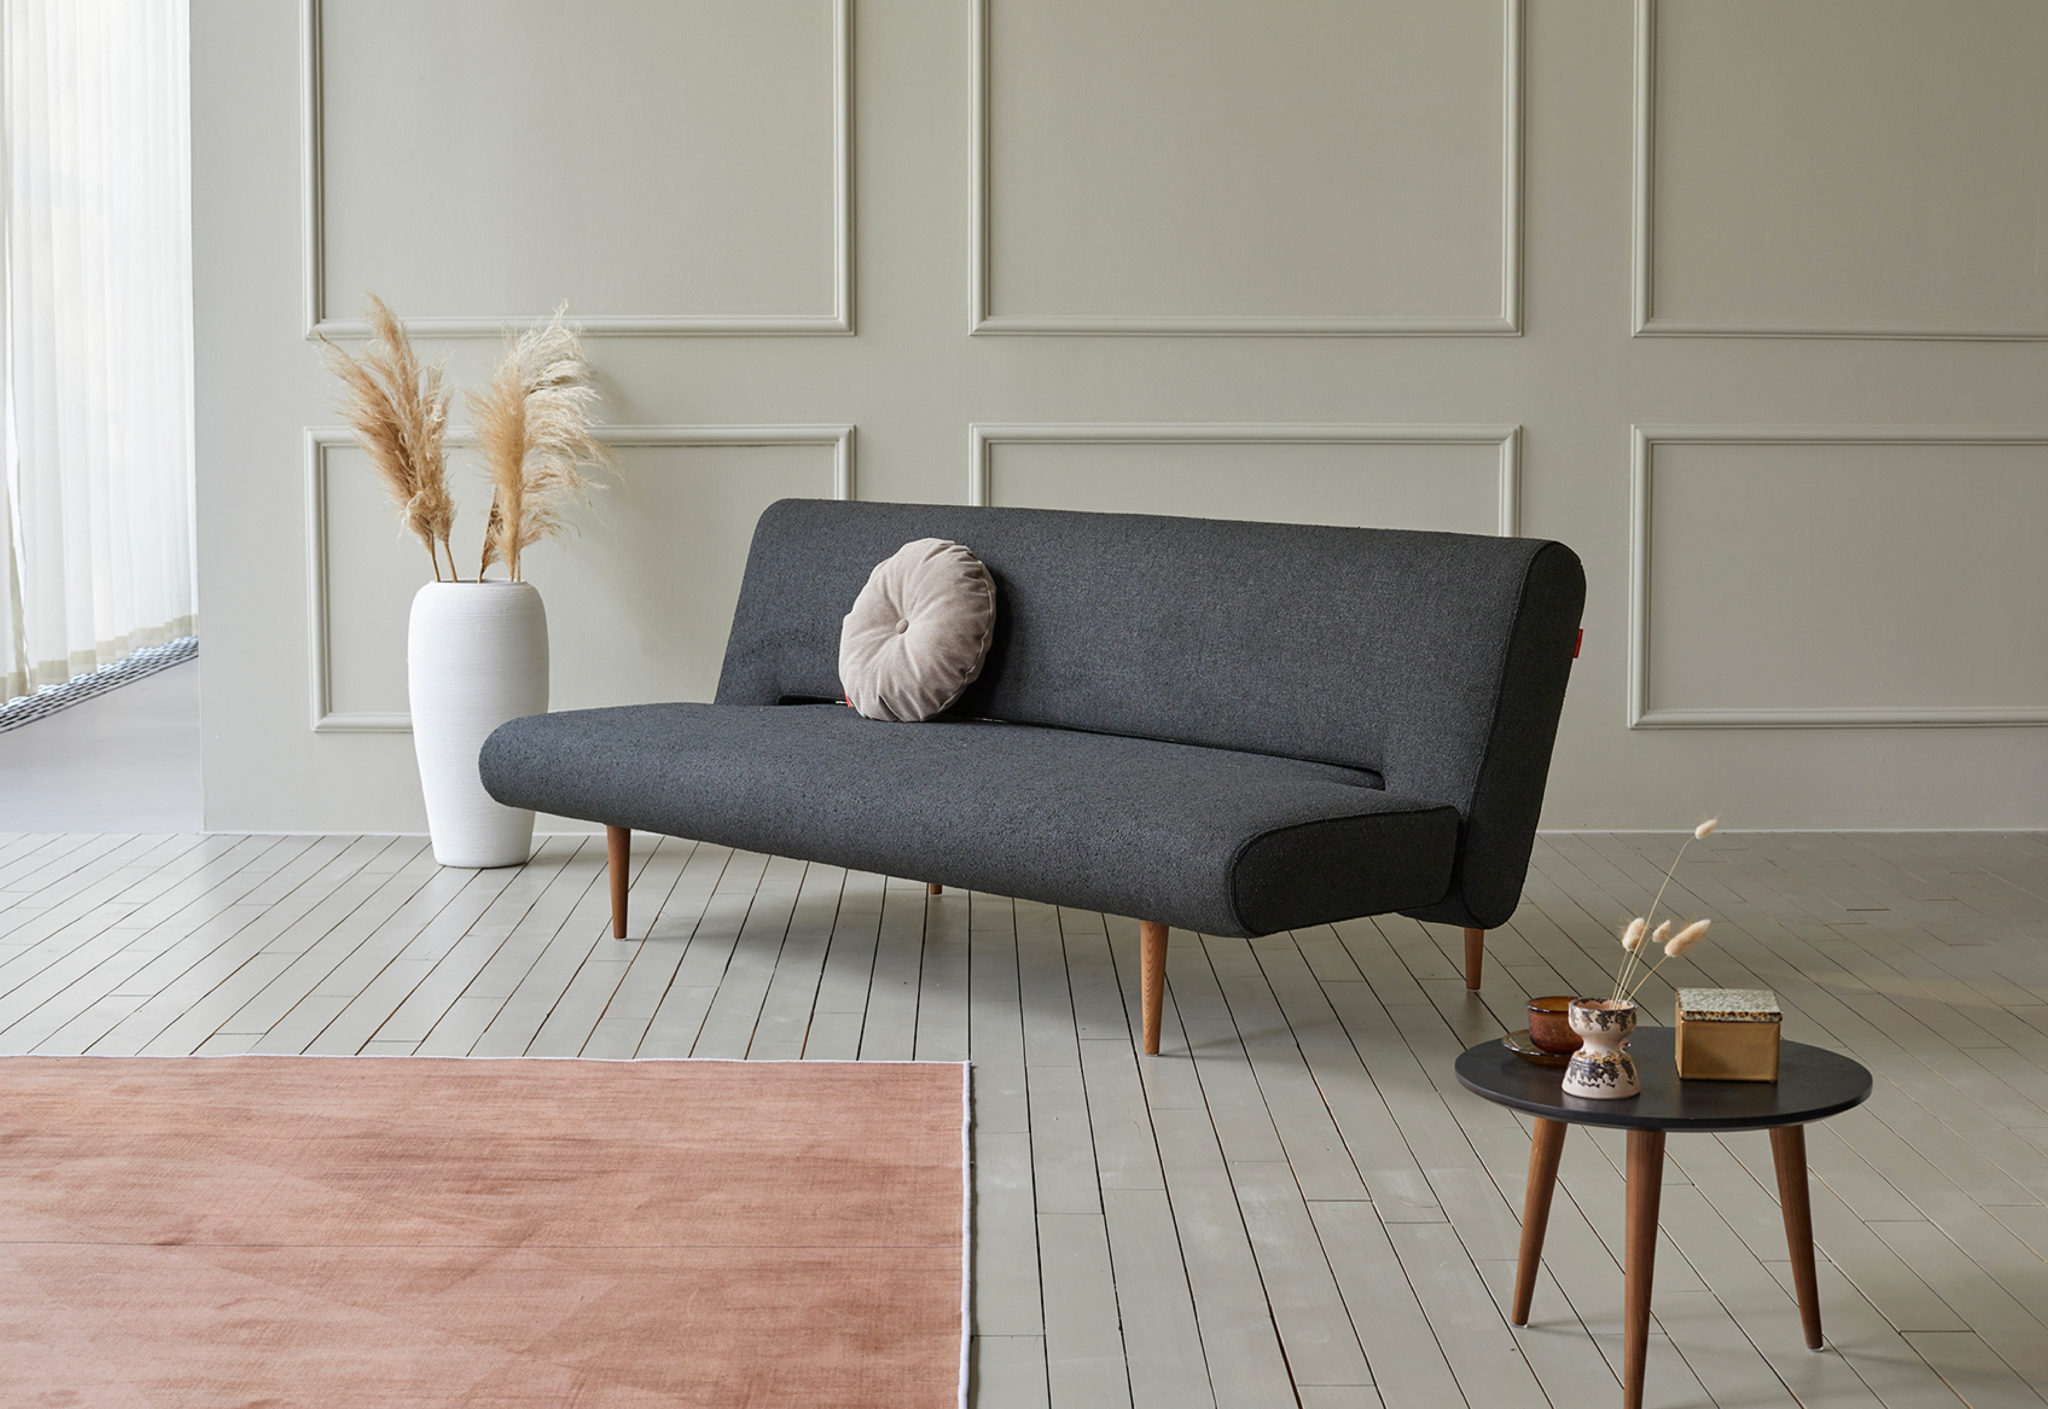 innovation sofa beds melbourne